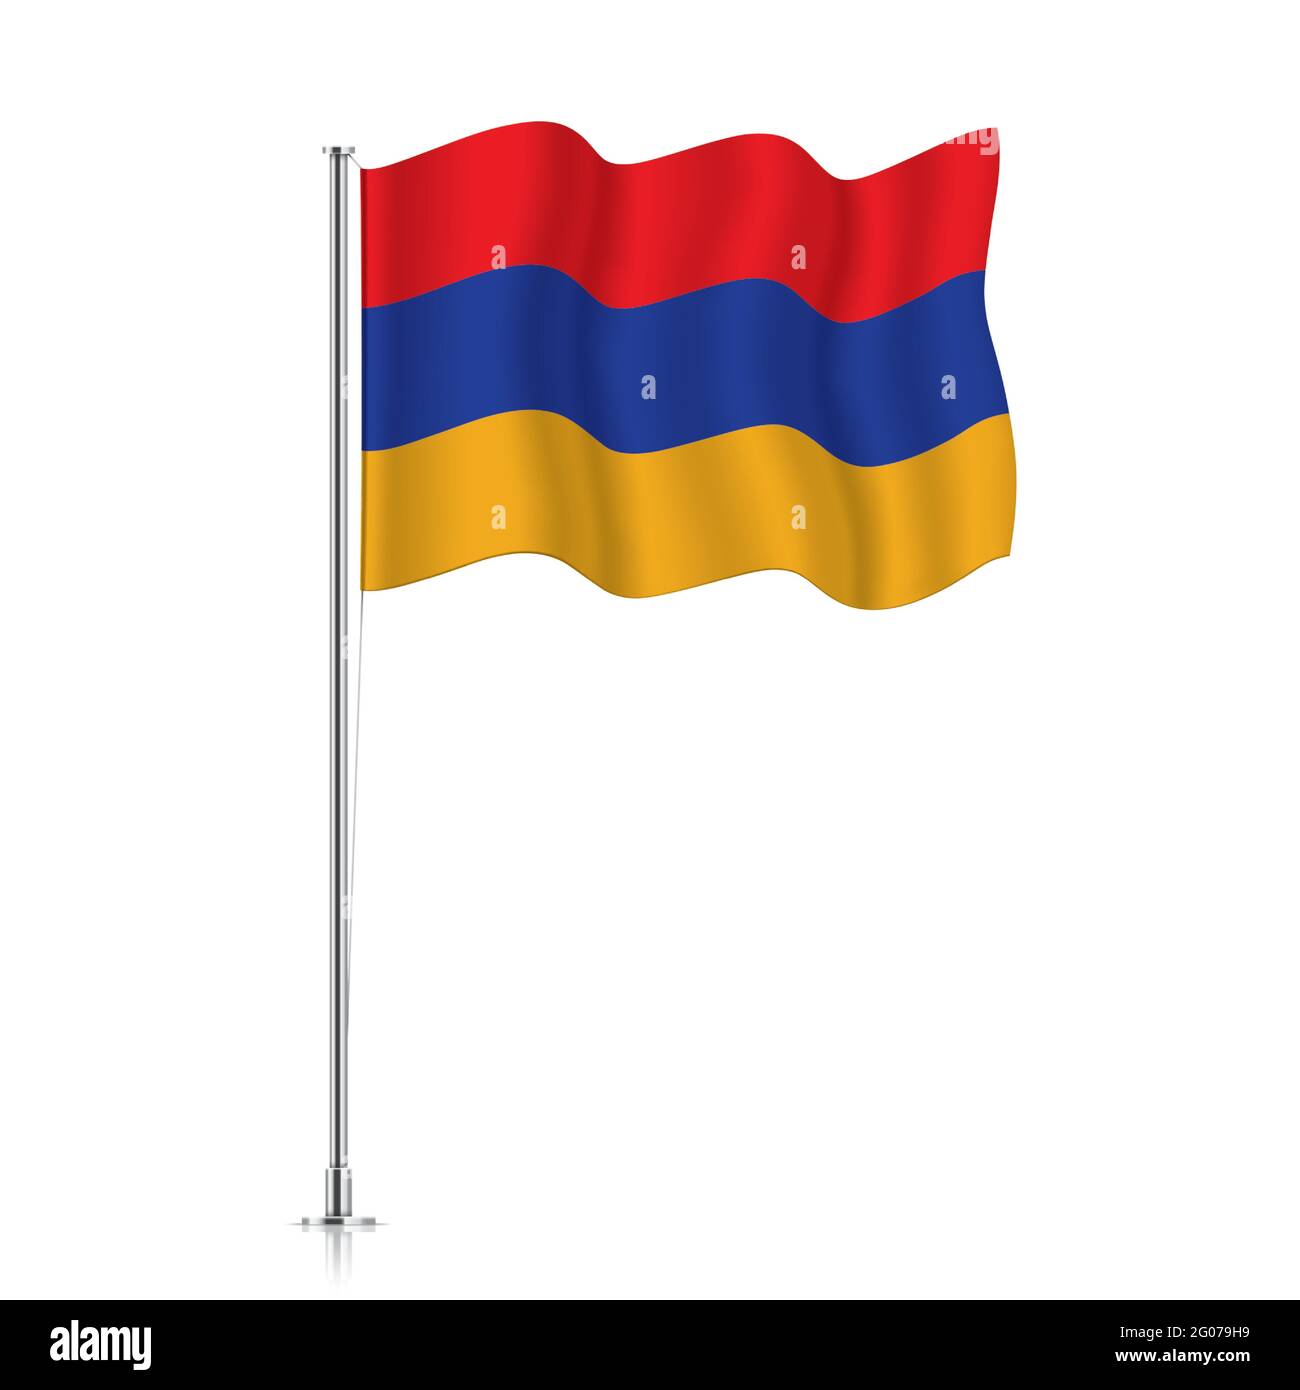 Bandiera armena che oscilla su un palo metallico. La bandiera ufficiale dell'Armenia, isolata su sfondo bianco. Illustrazione Vettoriale